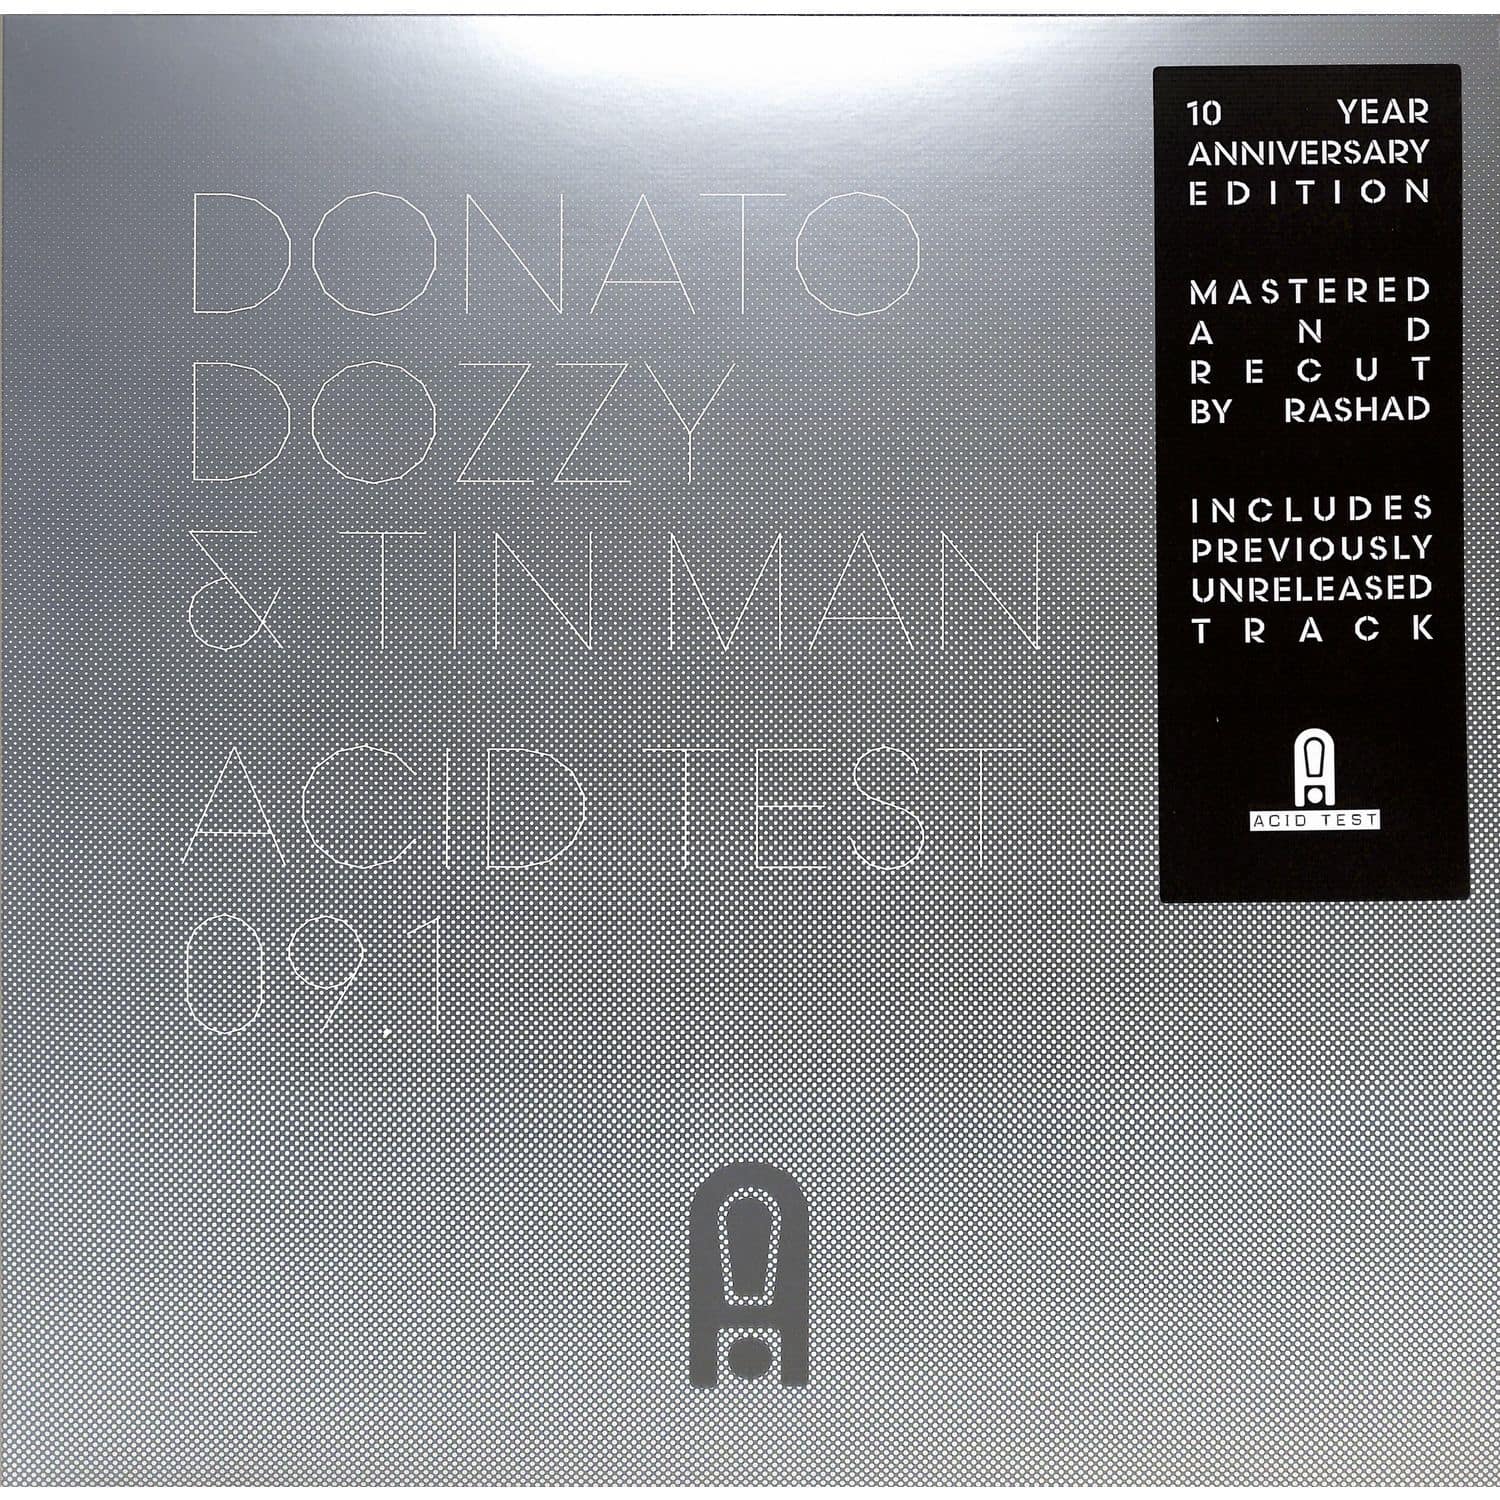 Donato Dozzy & Tin Man - ACID TEST 09.1